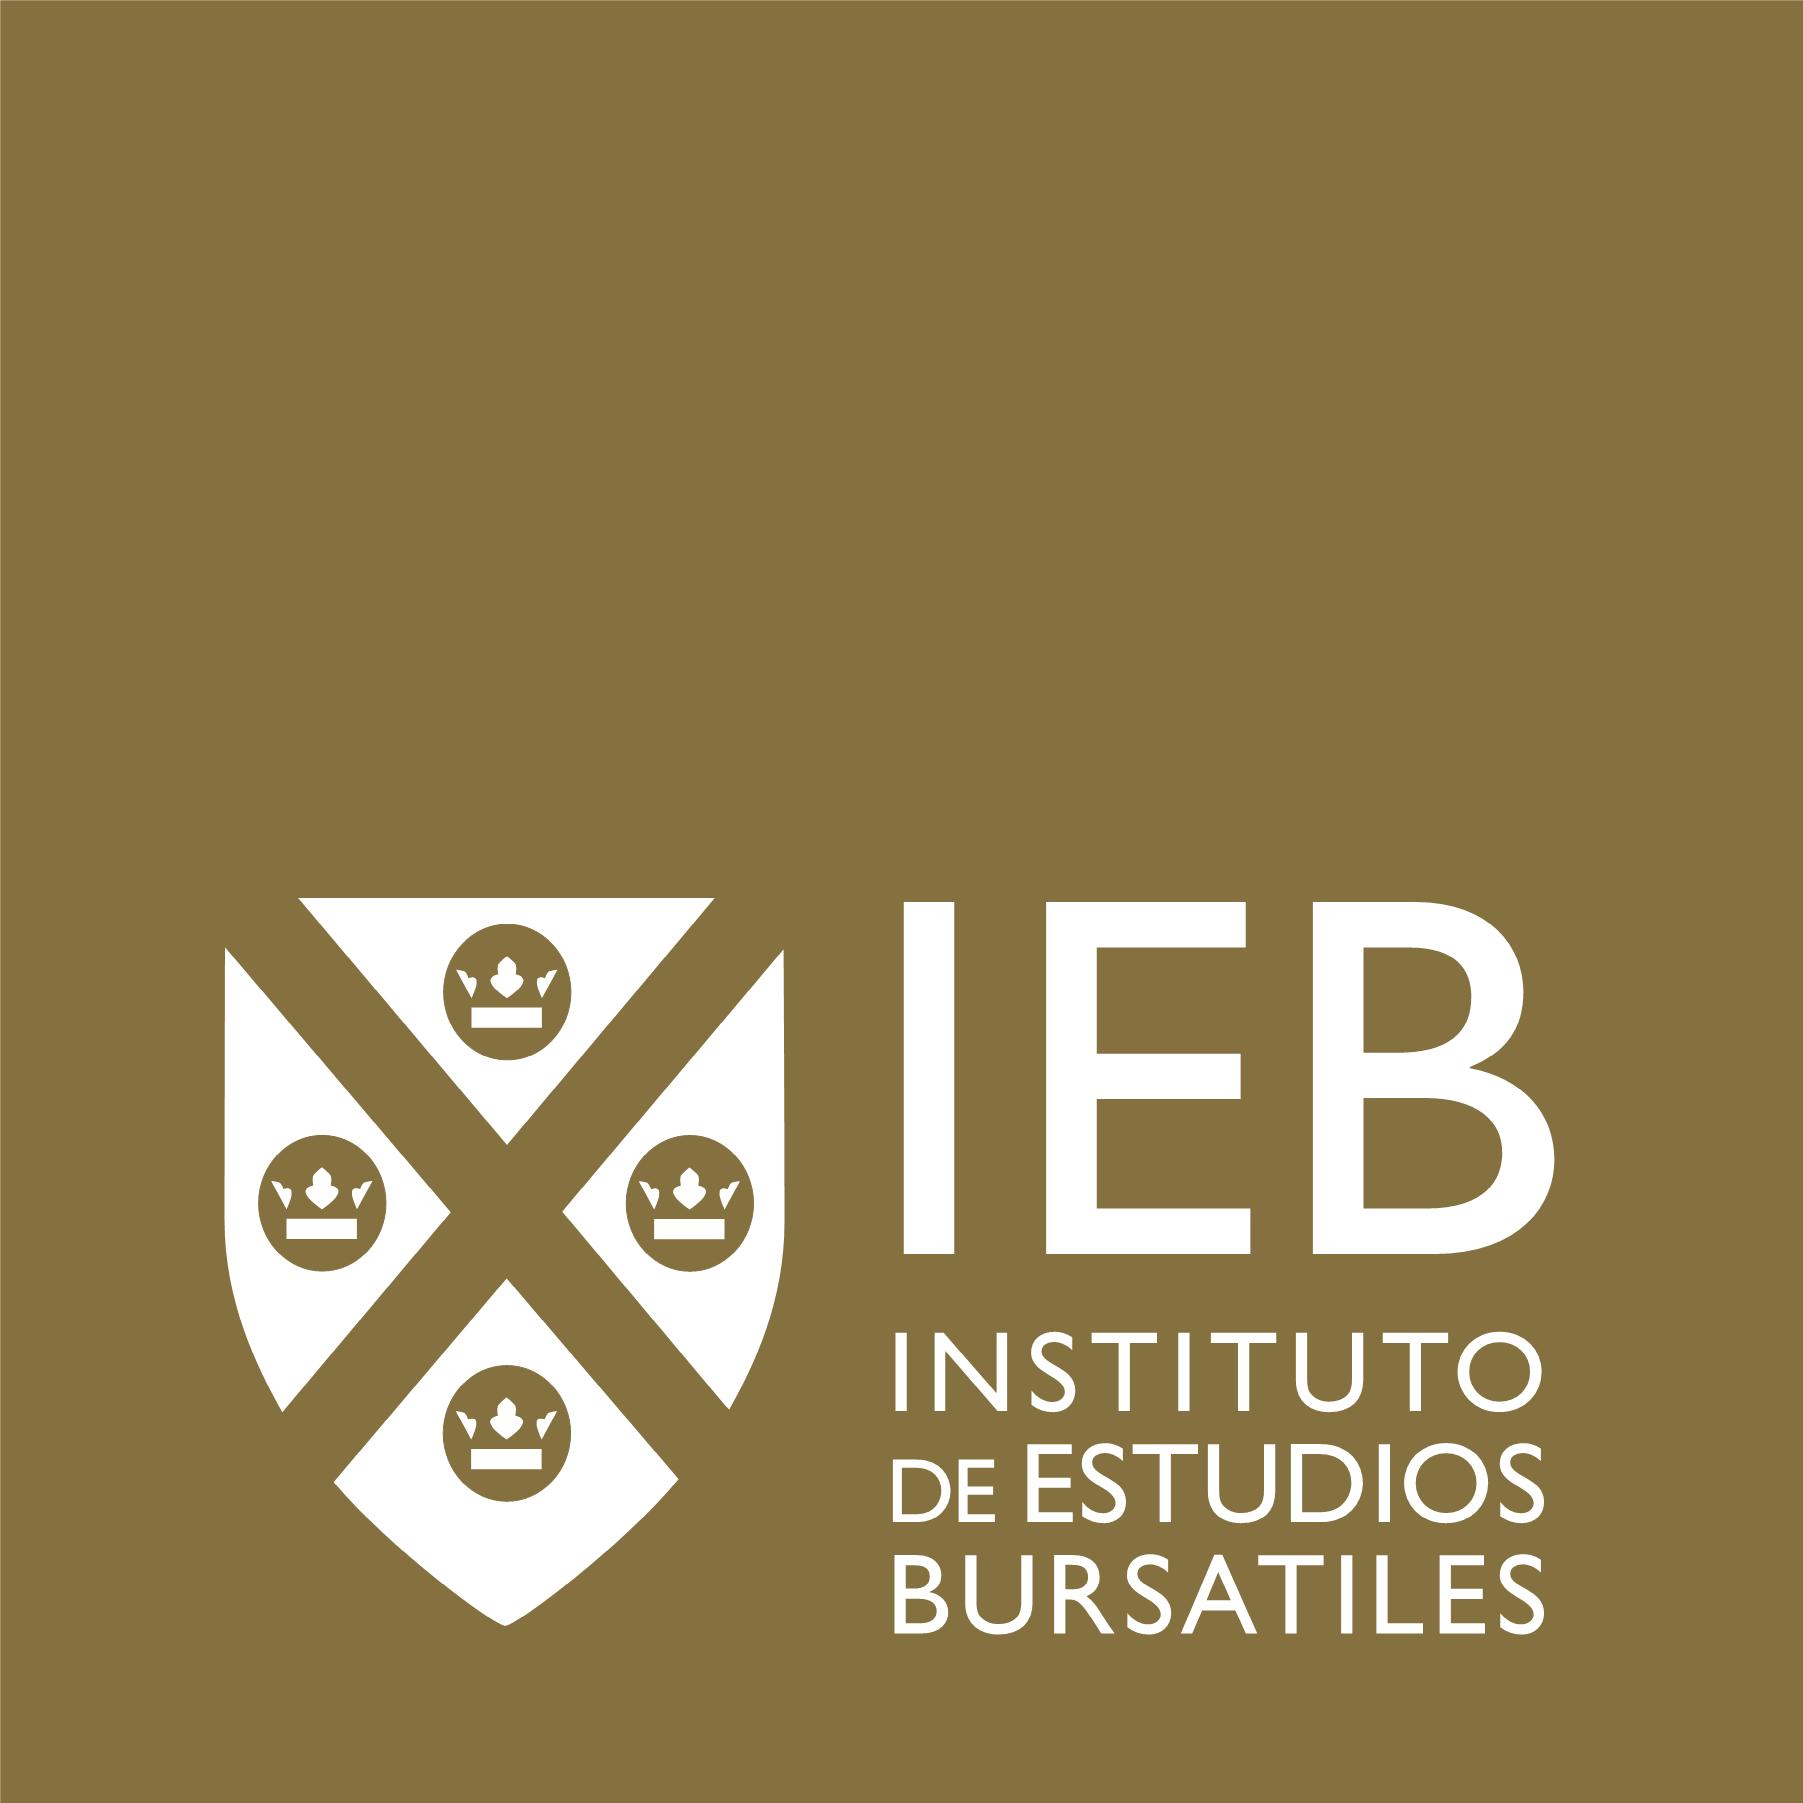 Curso Técnico en Mercados Financieros: Análisis Bursátil Técnico
y Fundamental - IEB - Instituto de Estudios Bursátiles